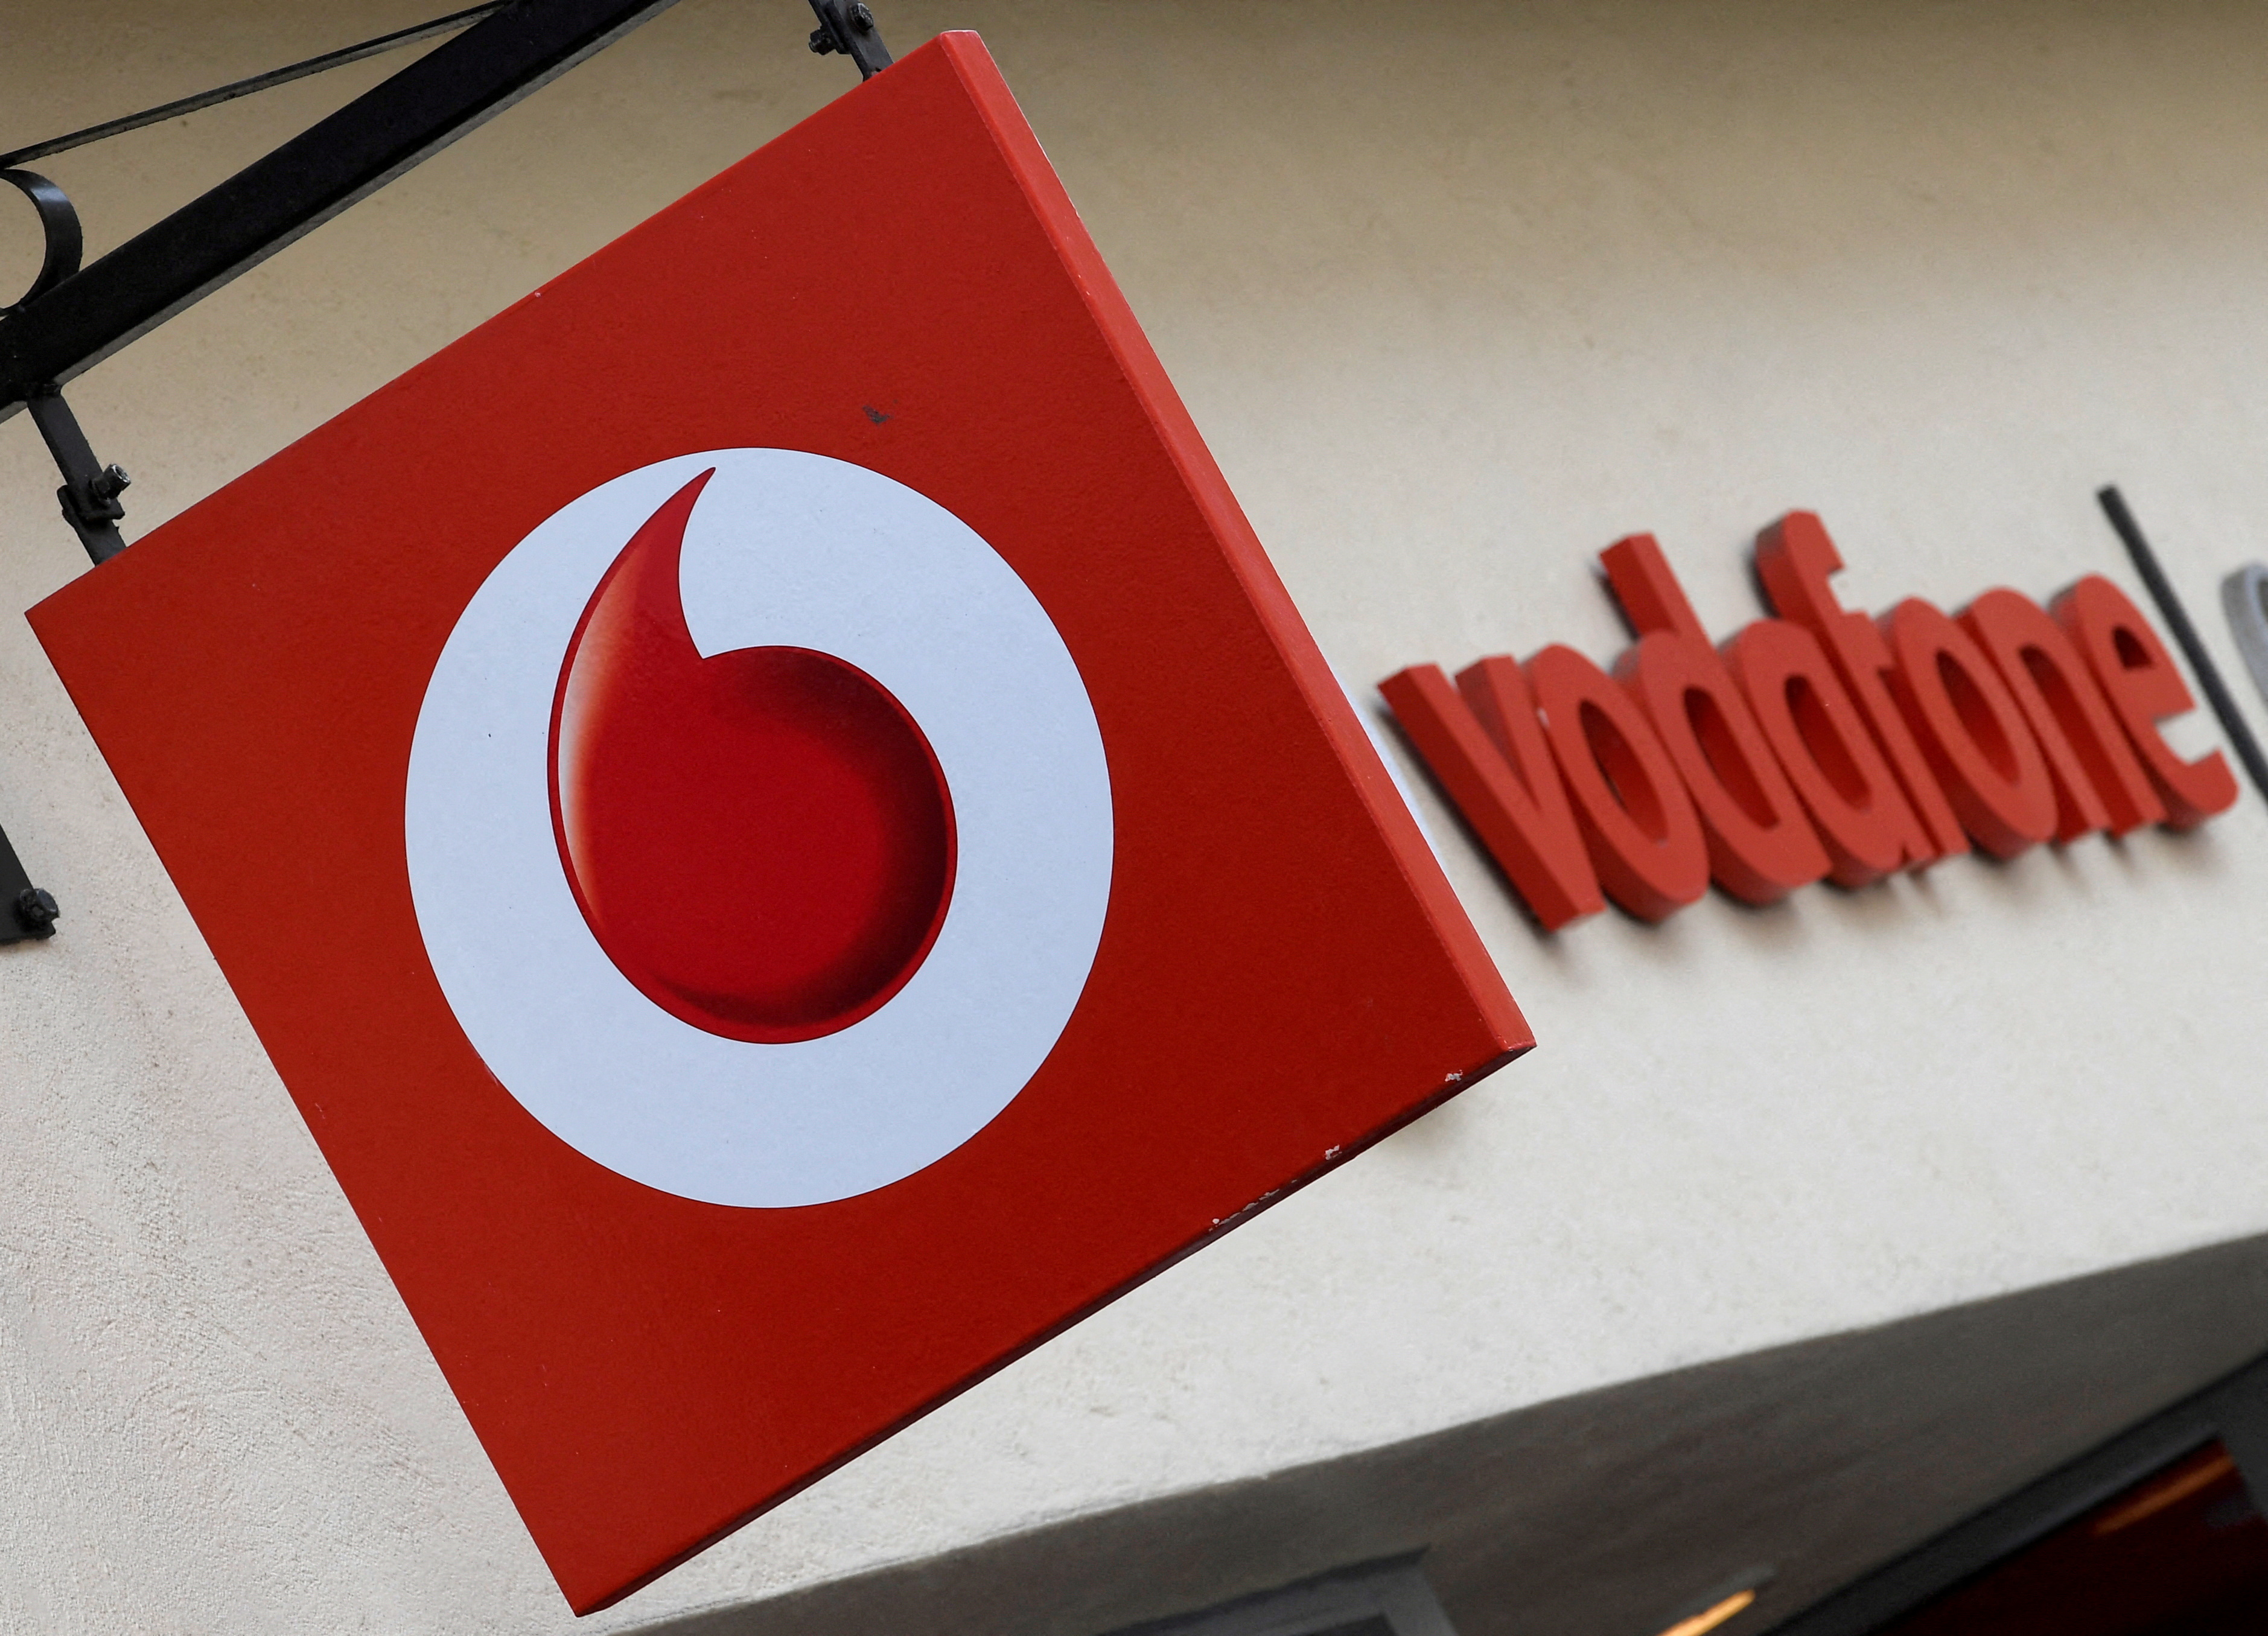 Branding hangs outside a Vodafone shop in Oxford